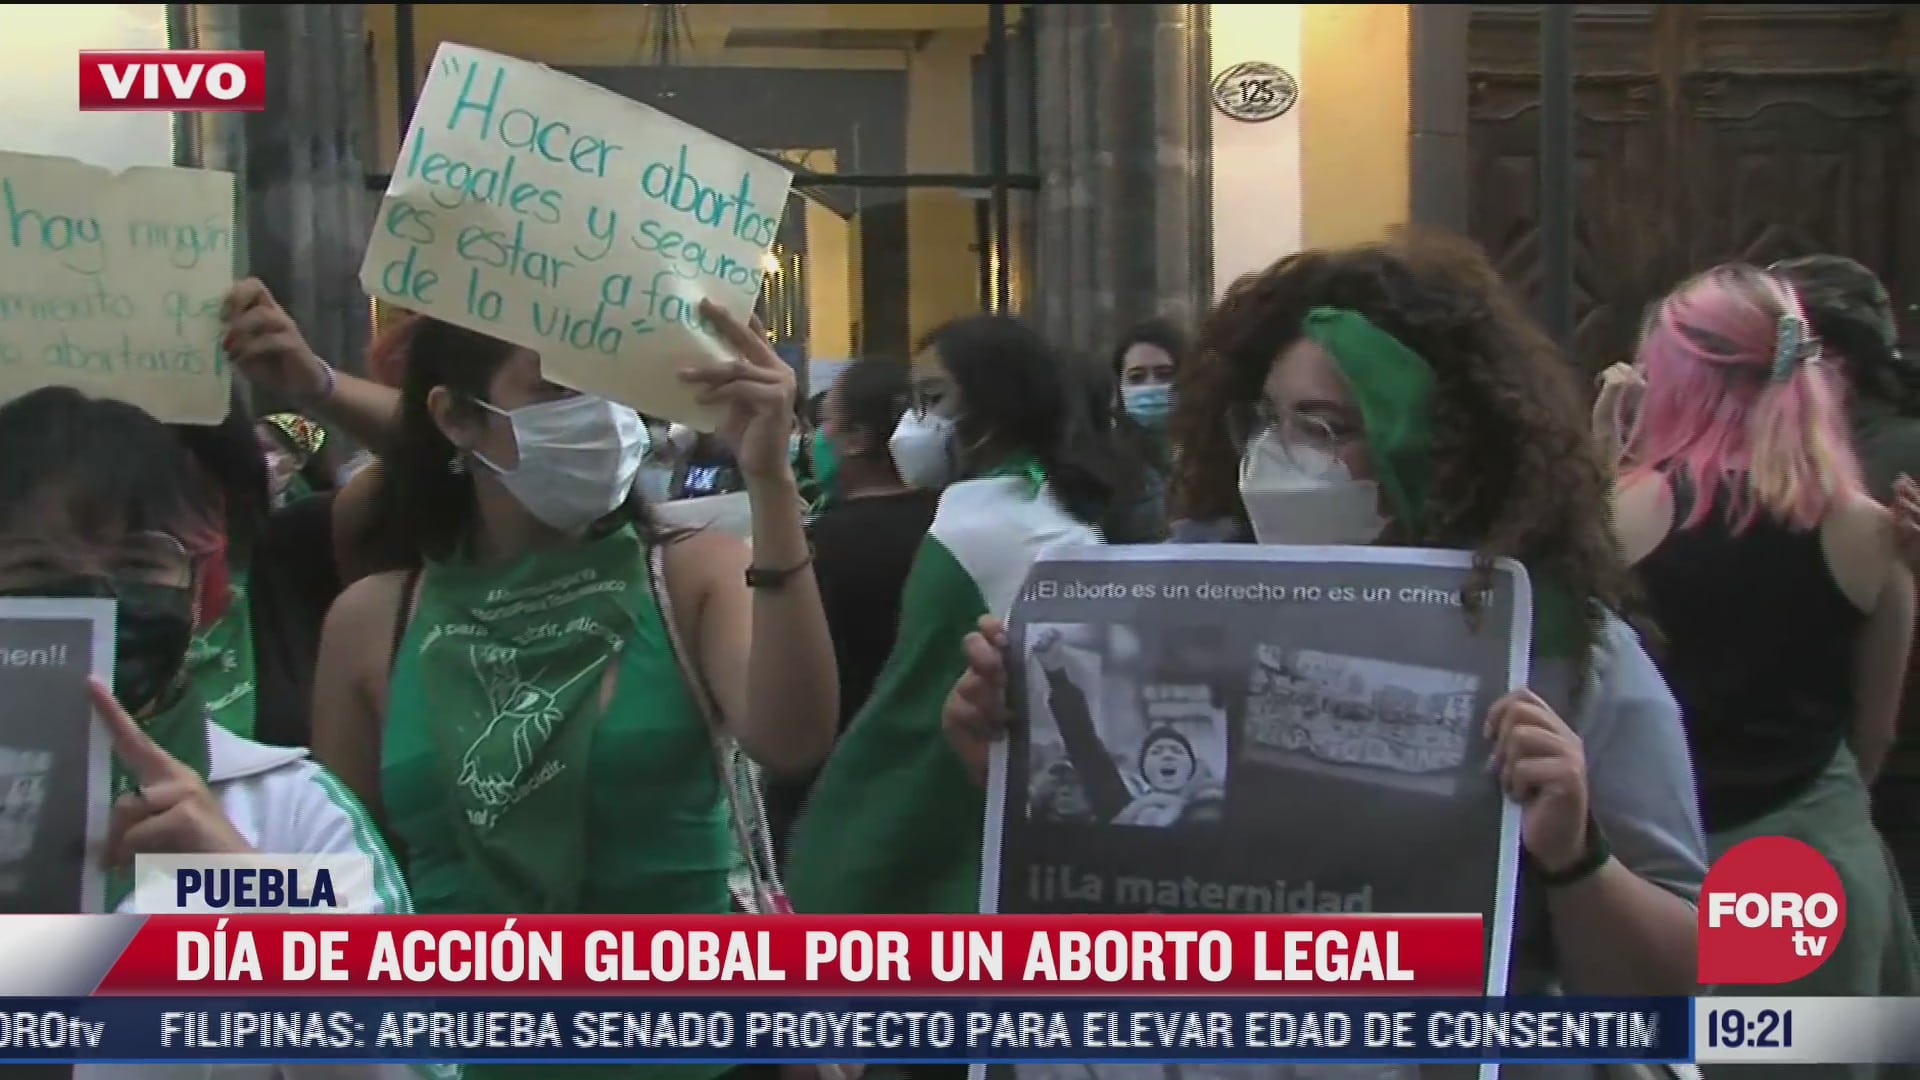 marcha feminista llega al congreso de puebla por el dia de accion global por un aborto legal